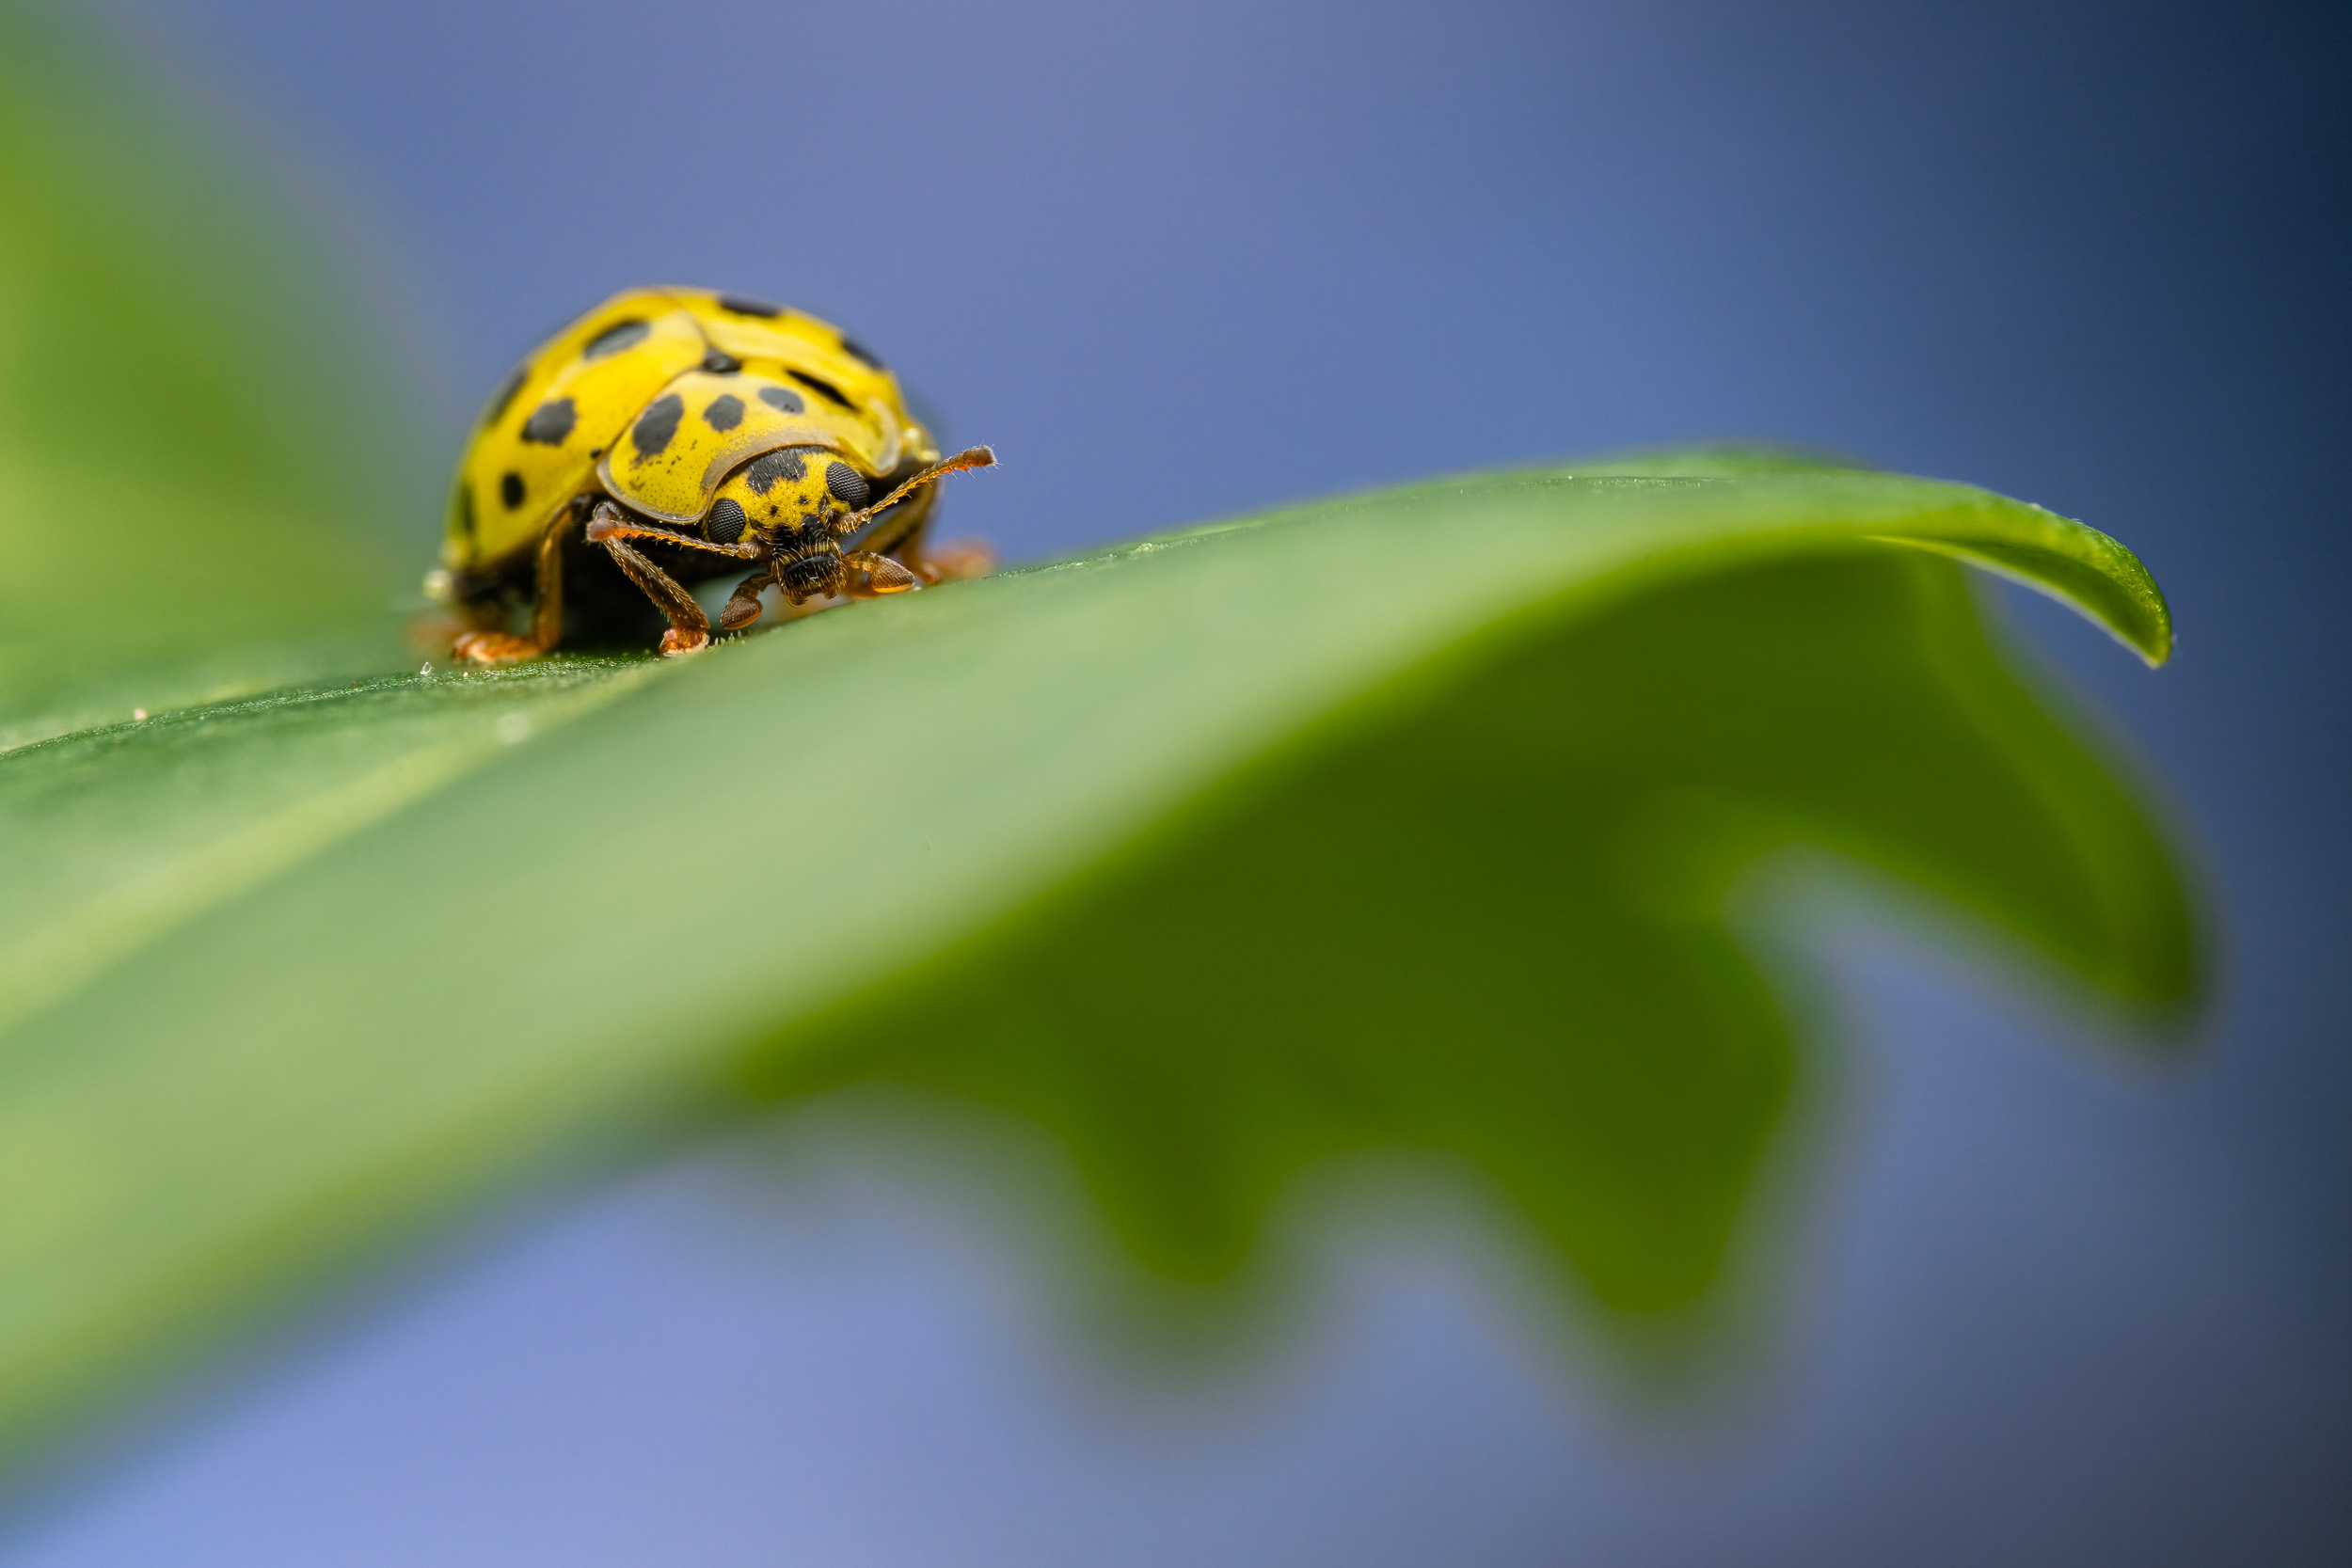 Psyllovora vigintiduopunctata / 22-Spot ladybird (Switzerland)